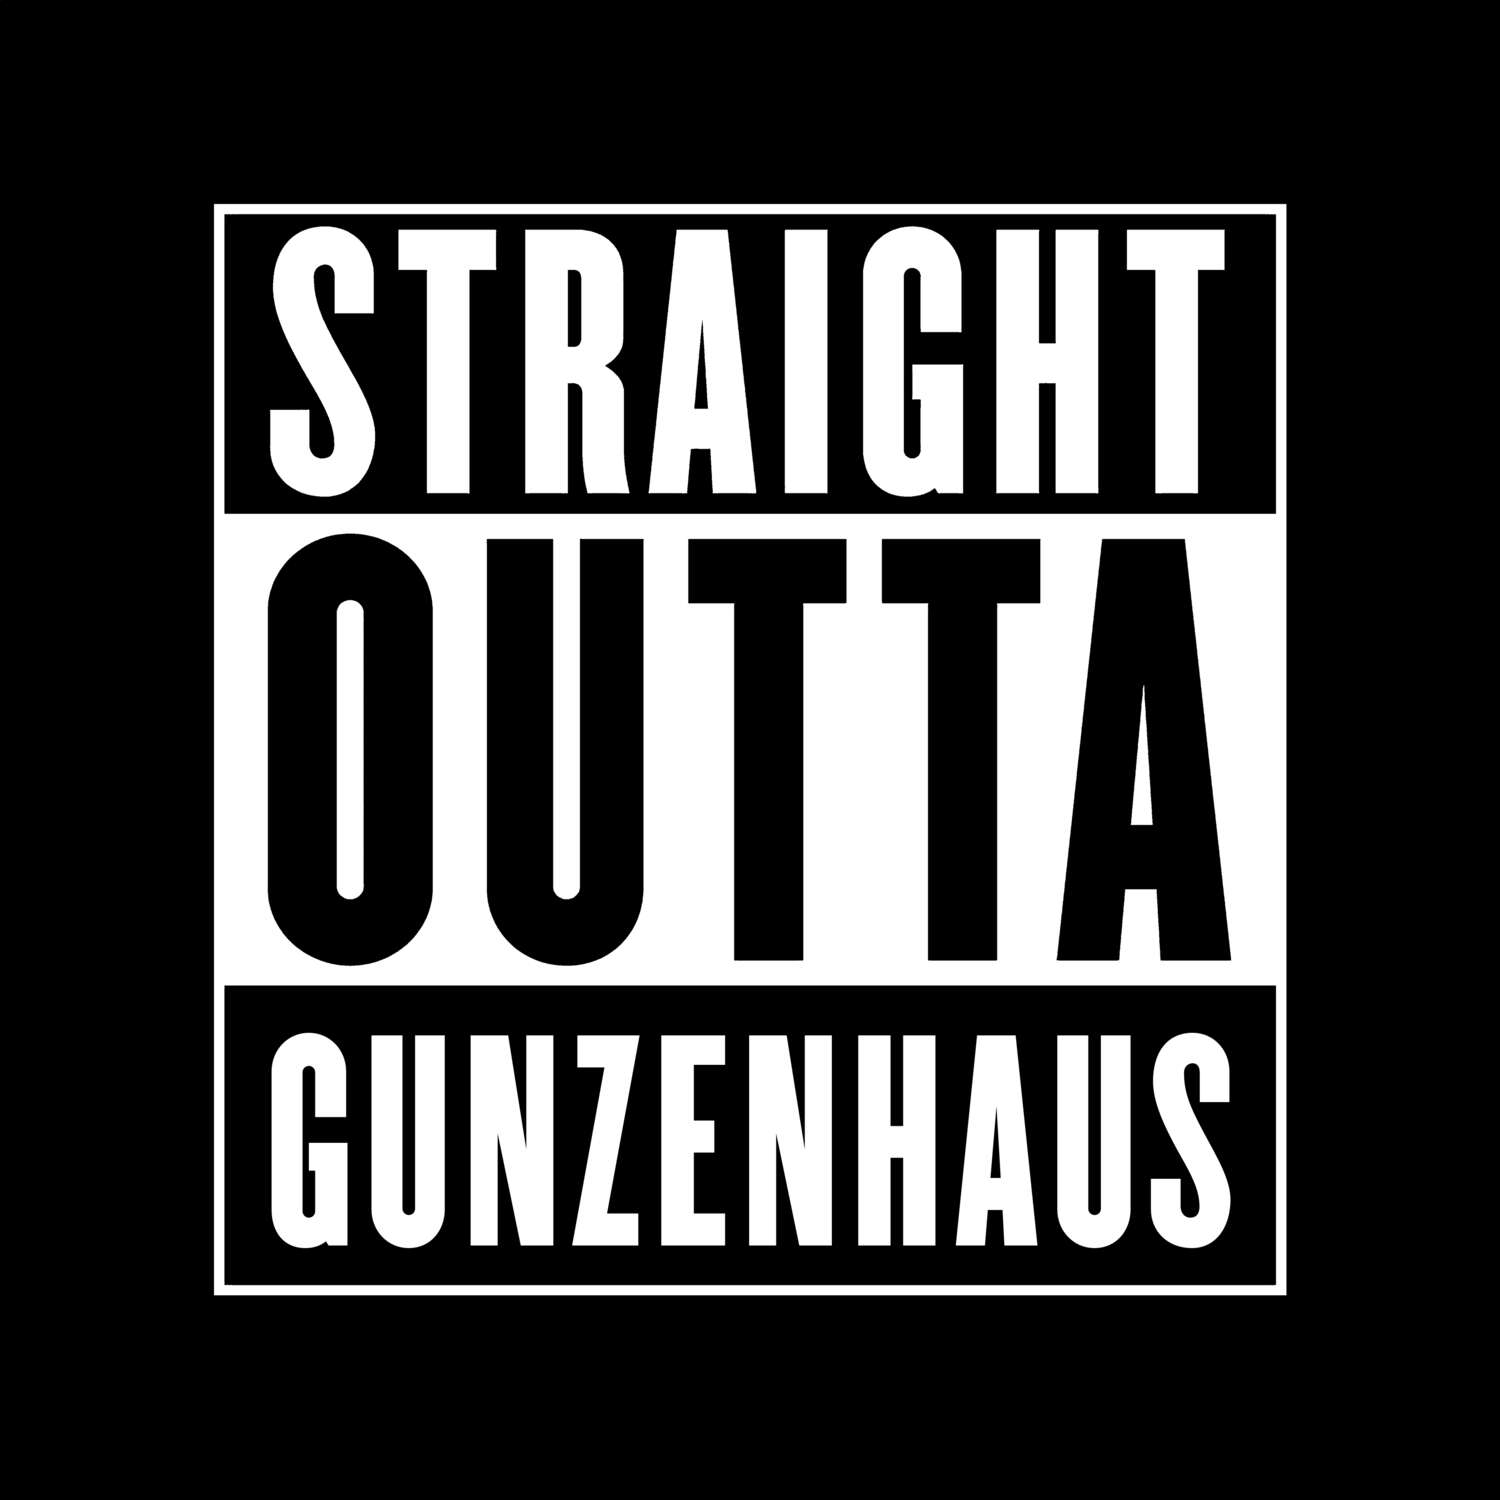 Gunzenhaus T-Shirt »Straight Outta«